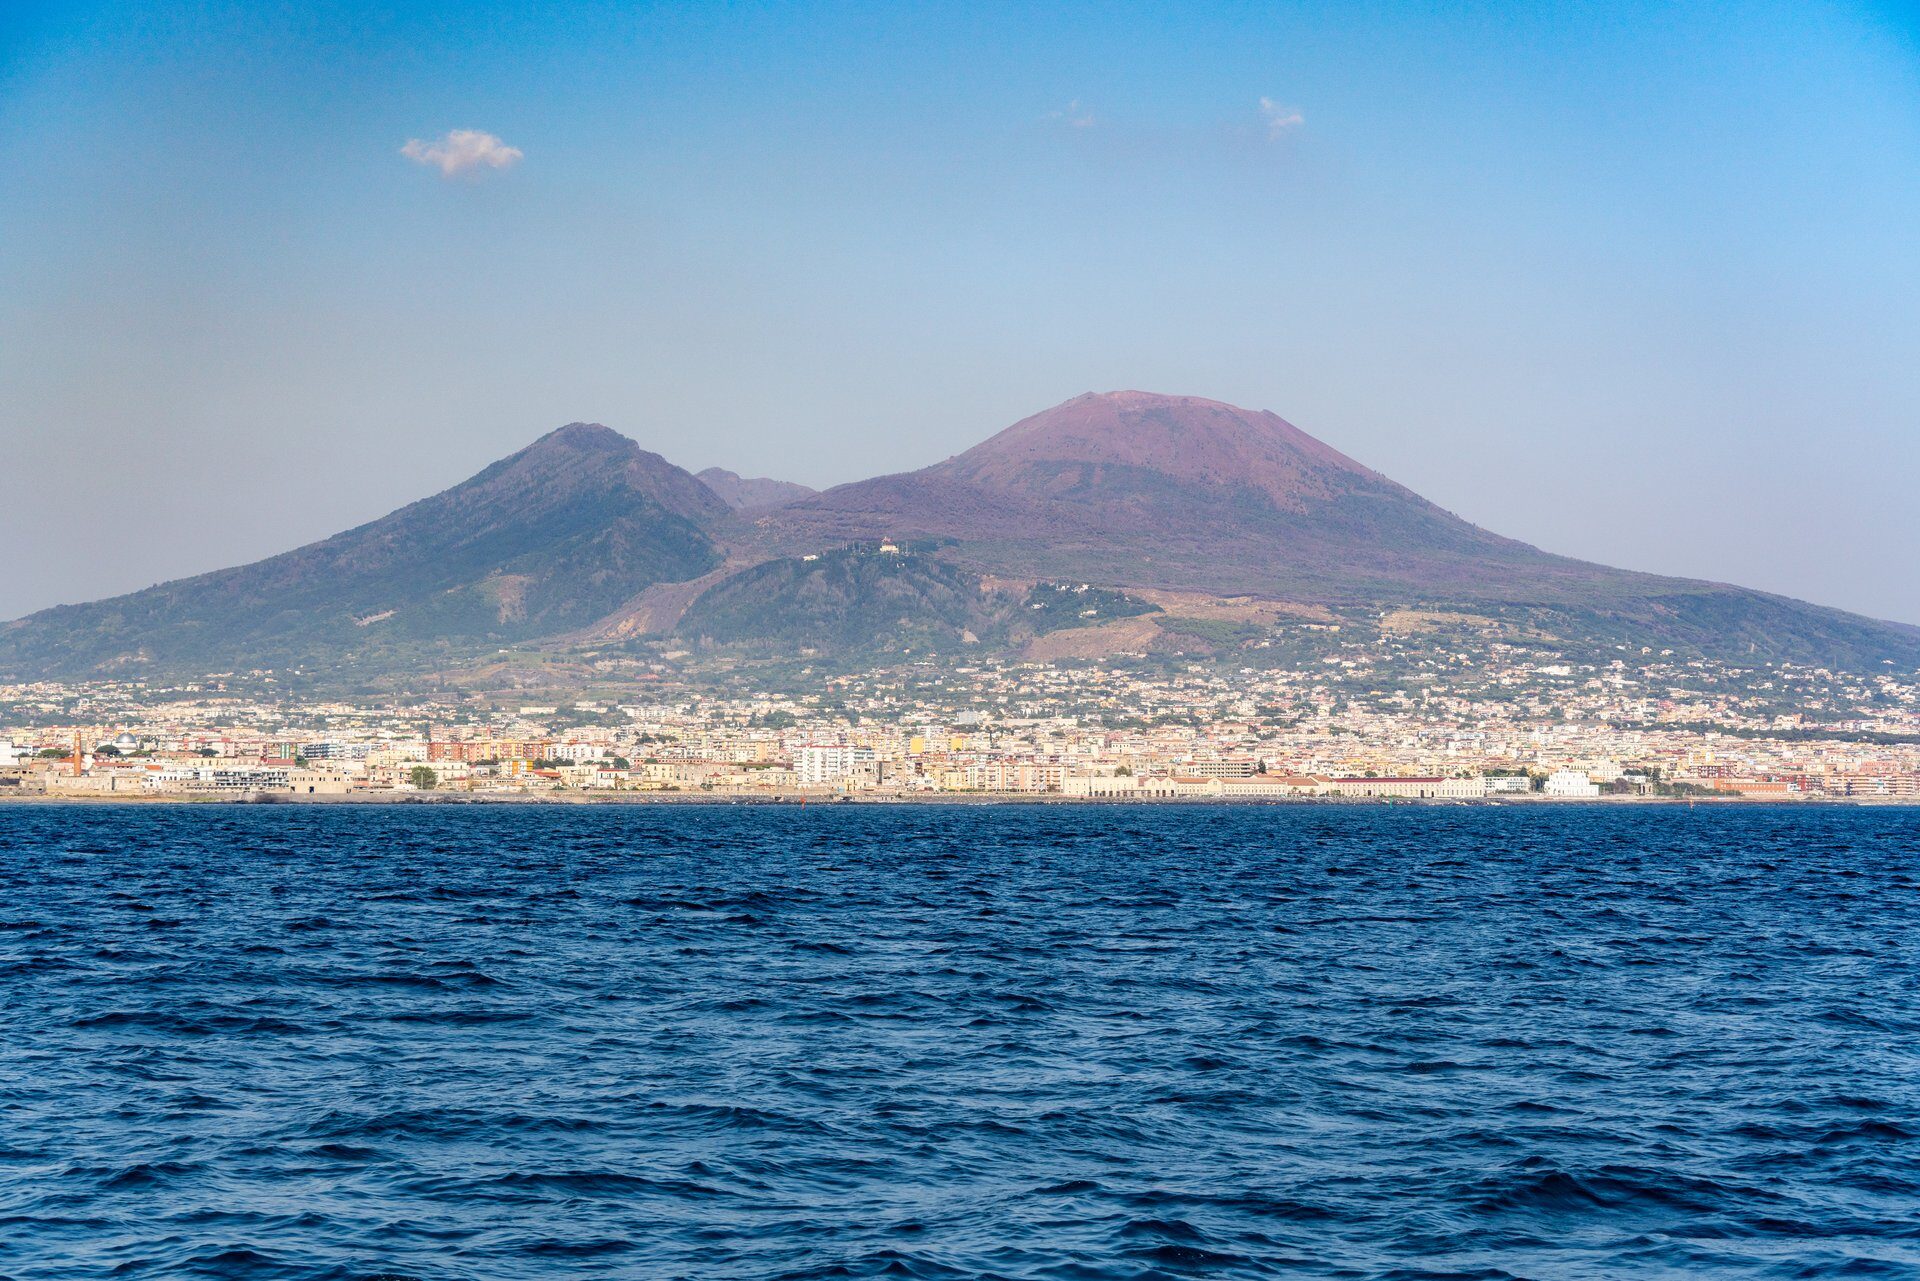 Mt vesuvius. Mount Vesuvius.